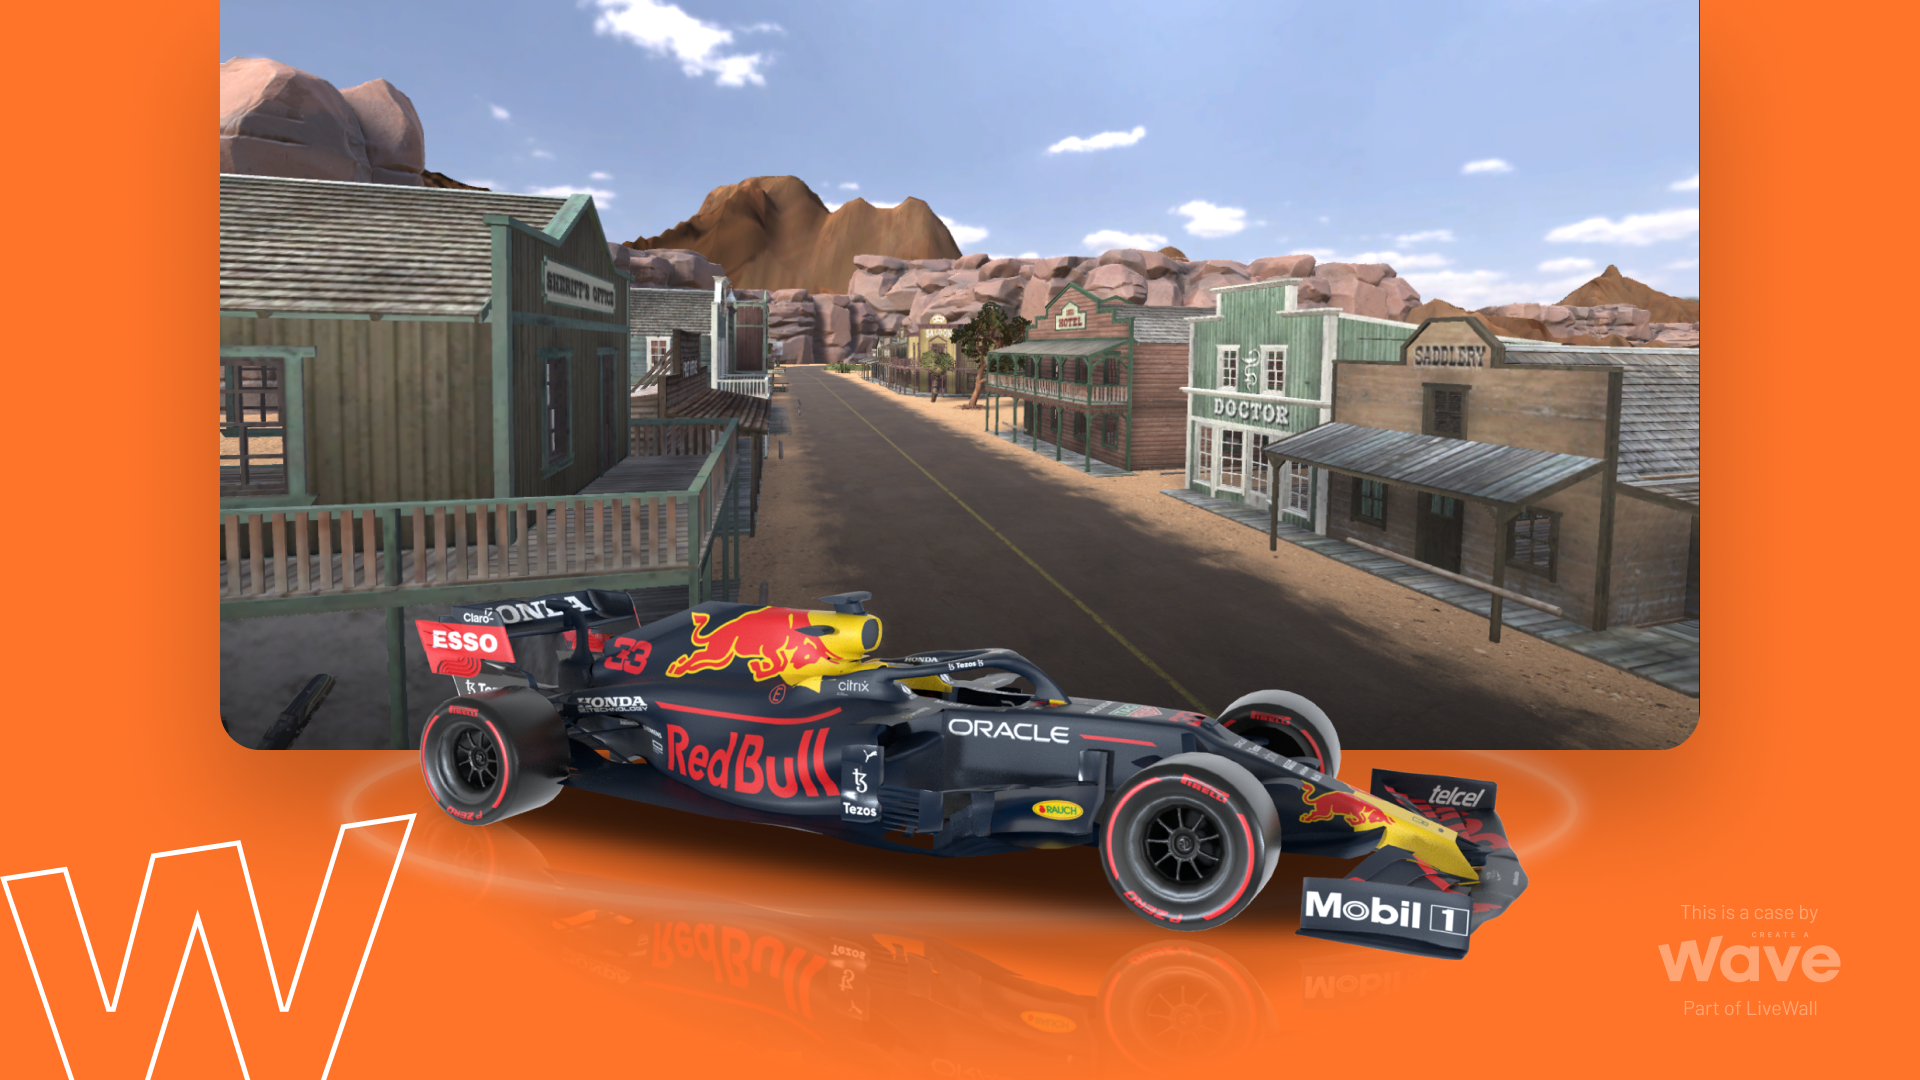 Honda, Red Bull Racing en Wave genomineerd voor Dutch Interactive Awards